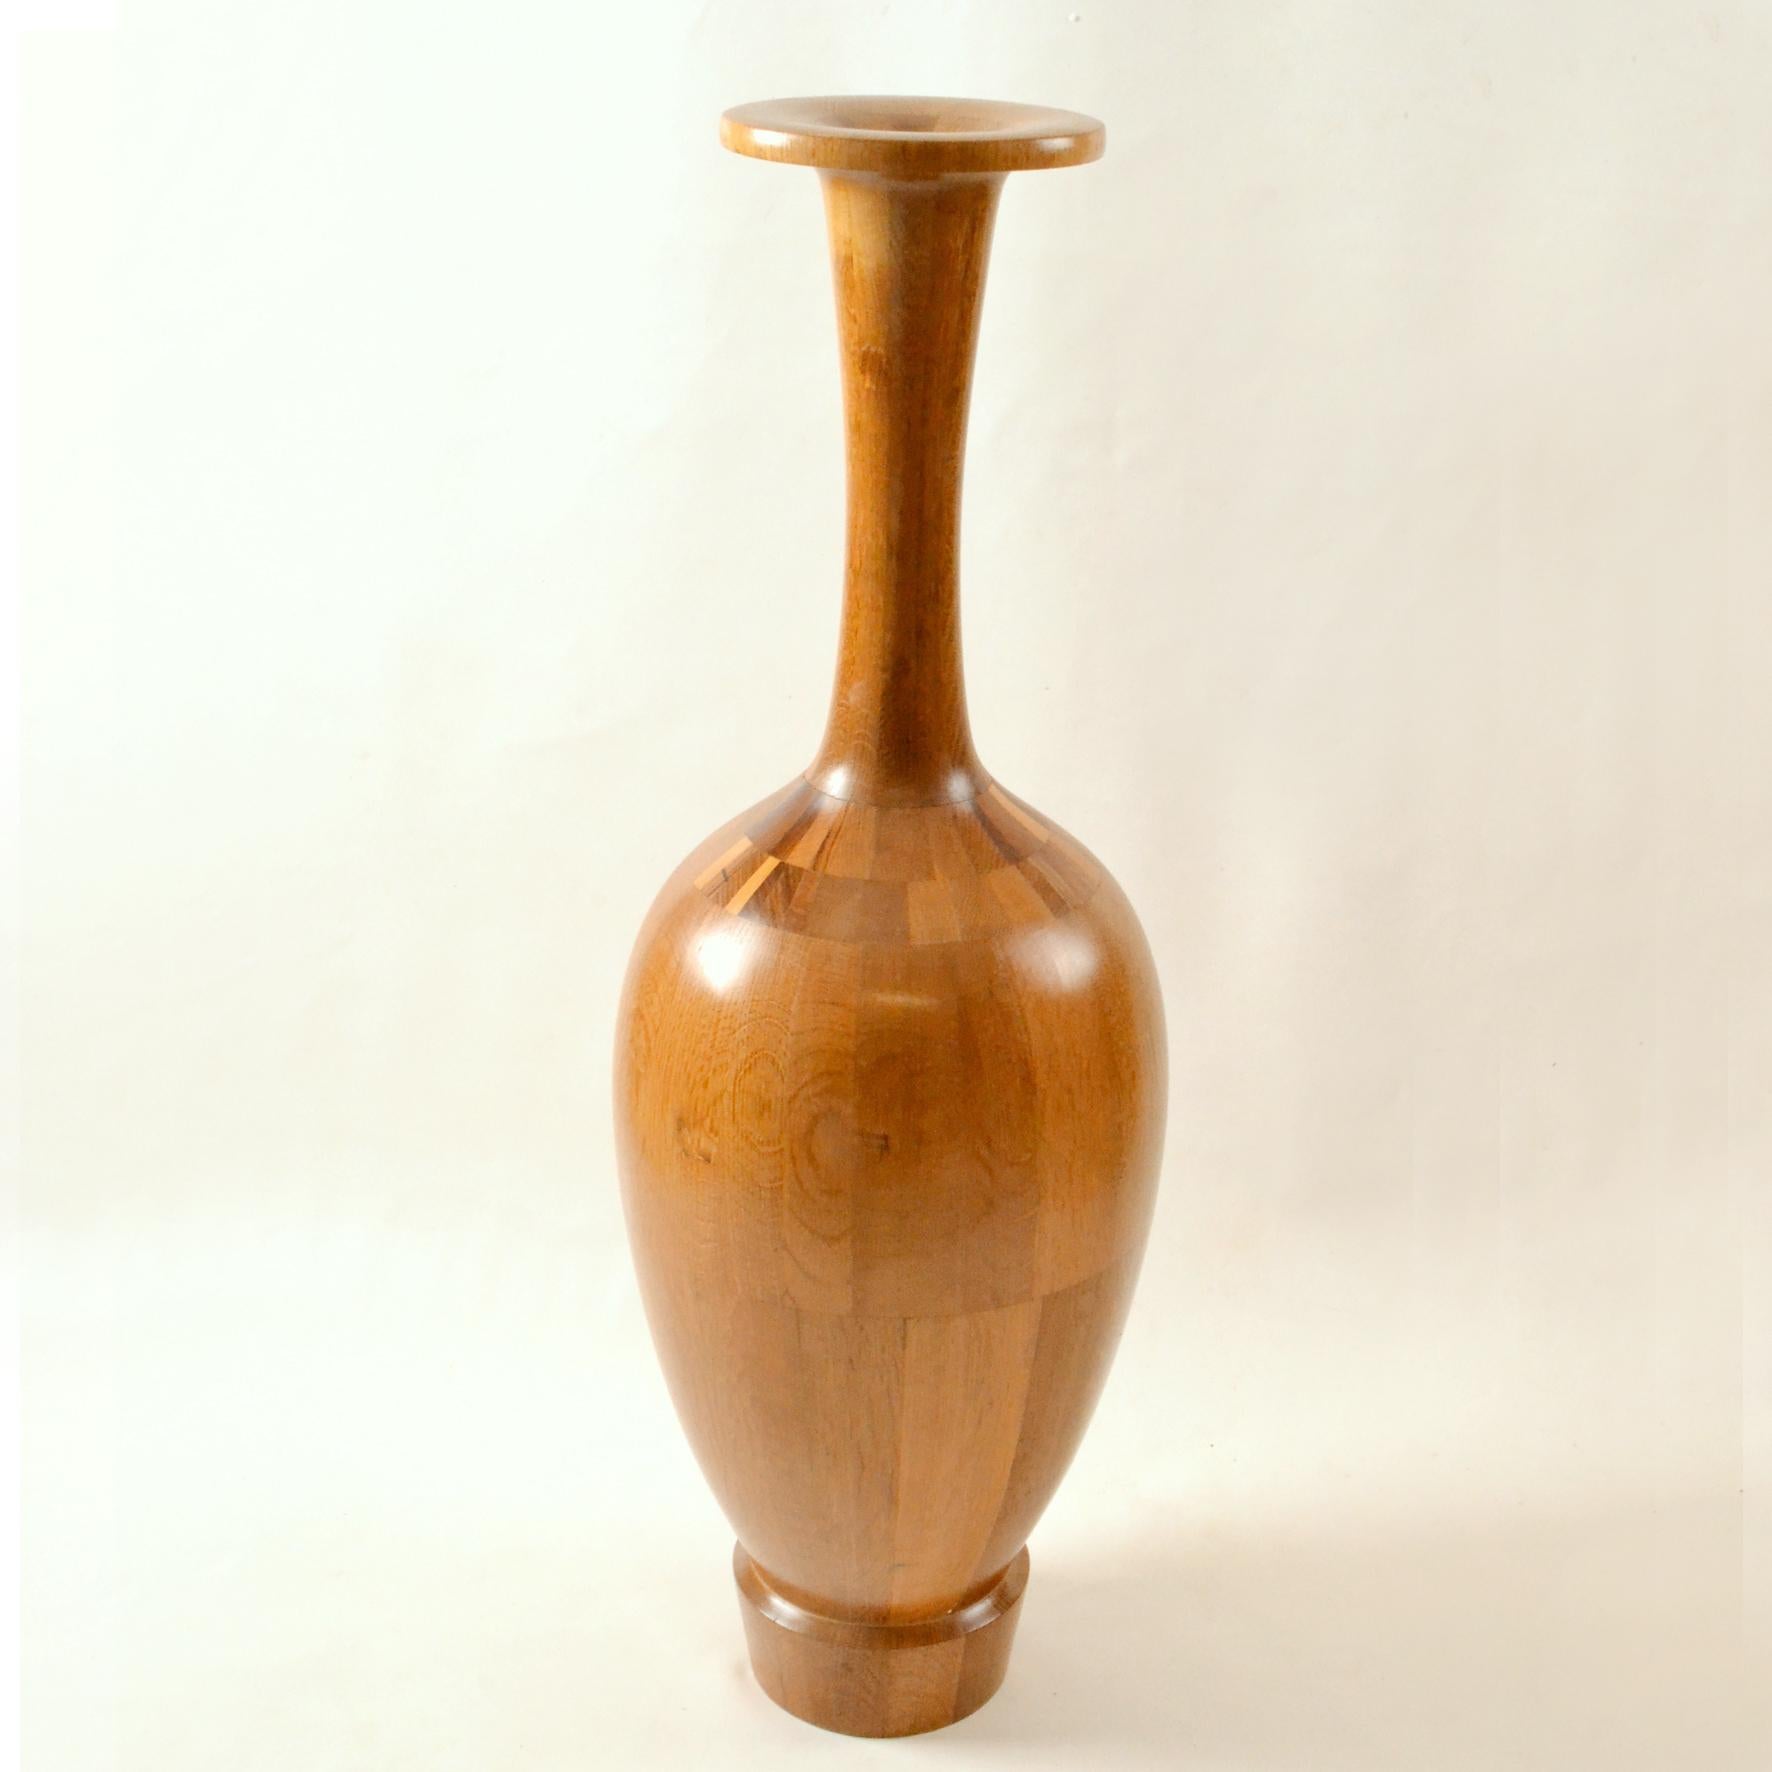 Grand vase à spécimen en bois tourné à la main par le maître artisan Maurice Bonami (1929), Belgique. Construit de manière complexe à partir de nombreux spécimens de bois différents et tourné sur un tour, produit entre 1965 et 1975.
Communément